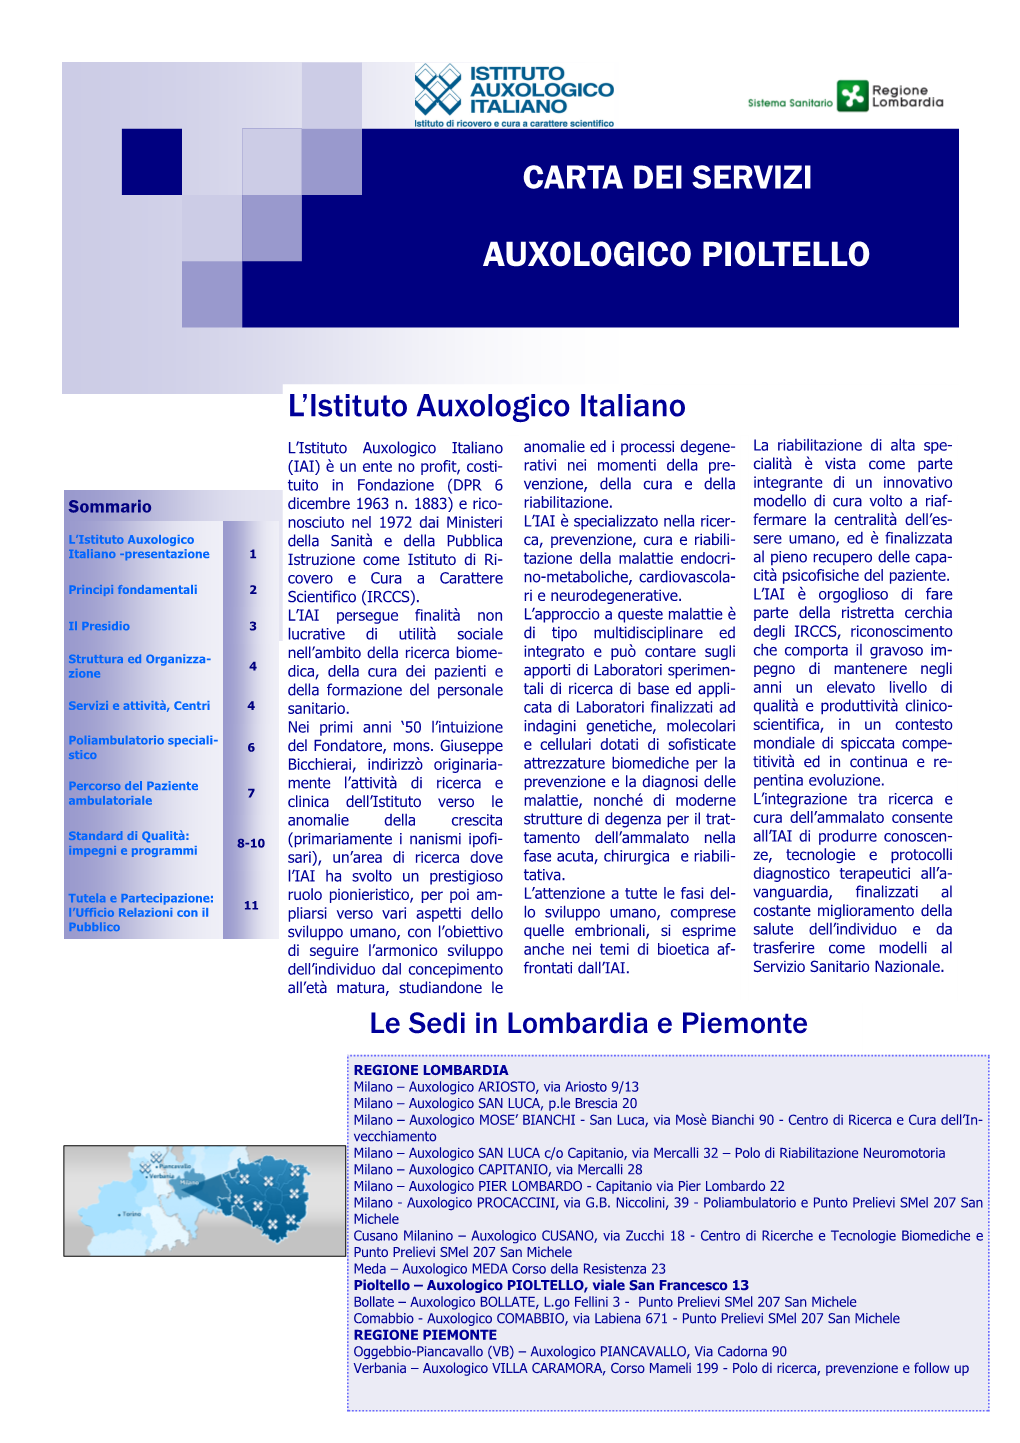 Carta Dei Servizi AUXOLOGICO PIOLTELLO 03.05.2018 Rev.08-2018